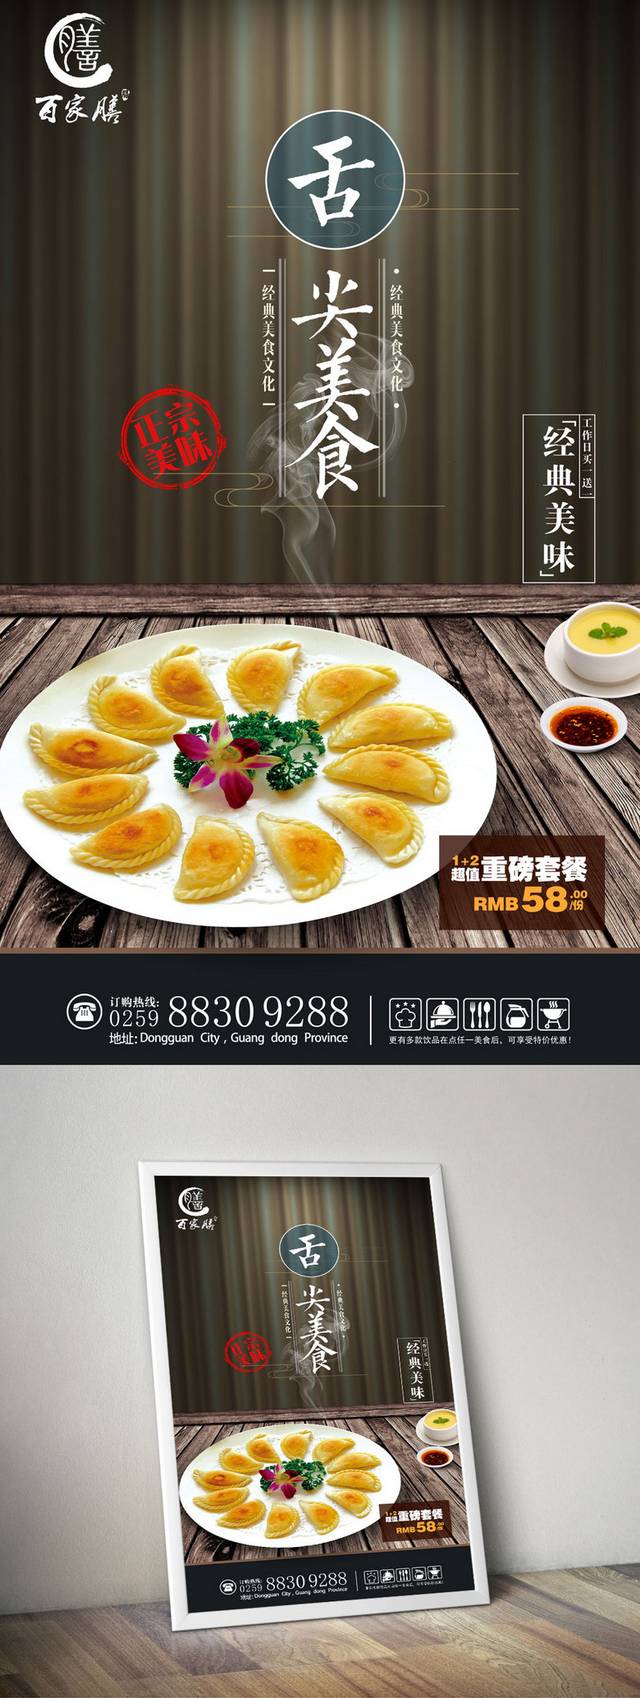 高清韭菜盒子海报设计psd